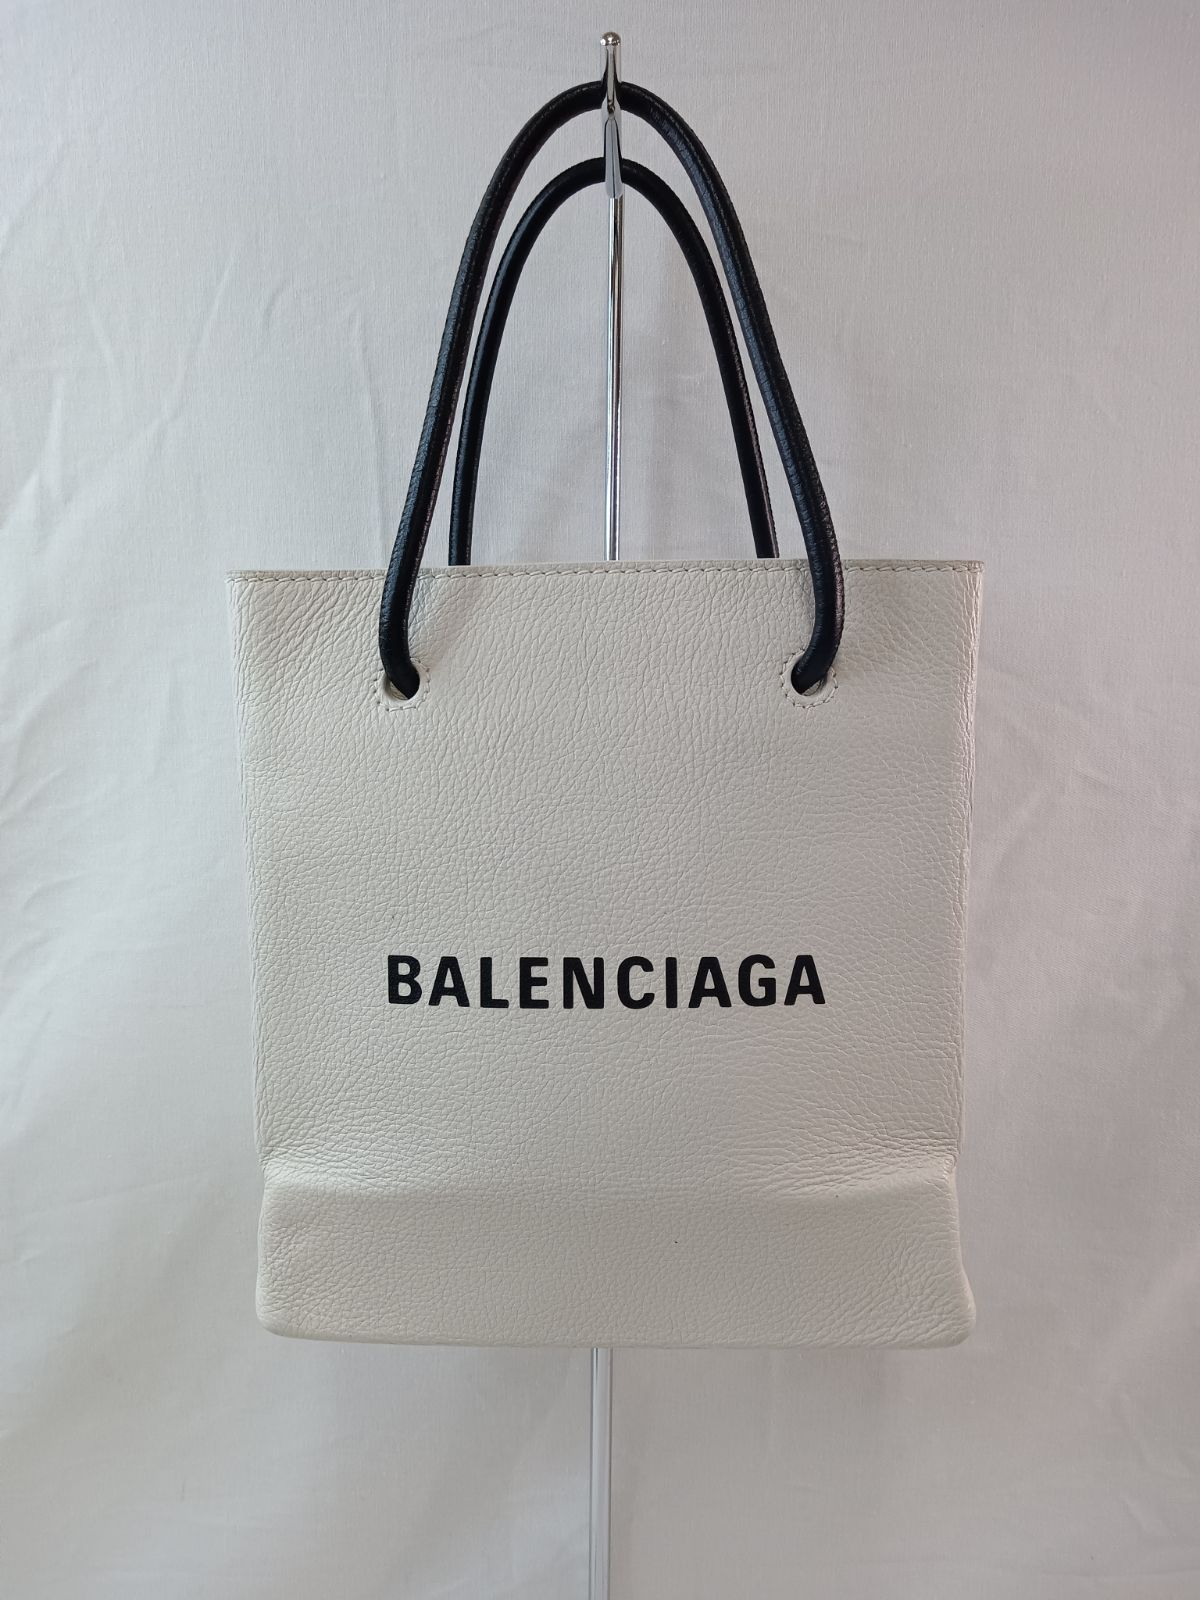 BALENCIAGA(バレンシアガ)ミニショッピングバッグ - メルカリ